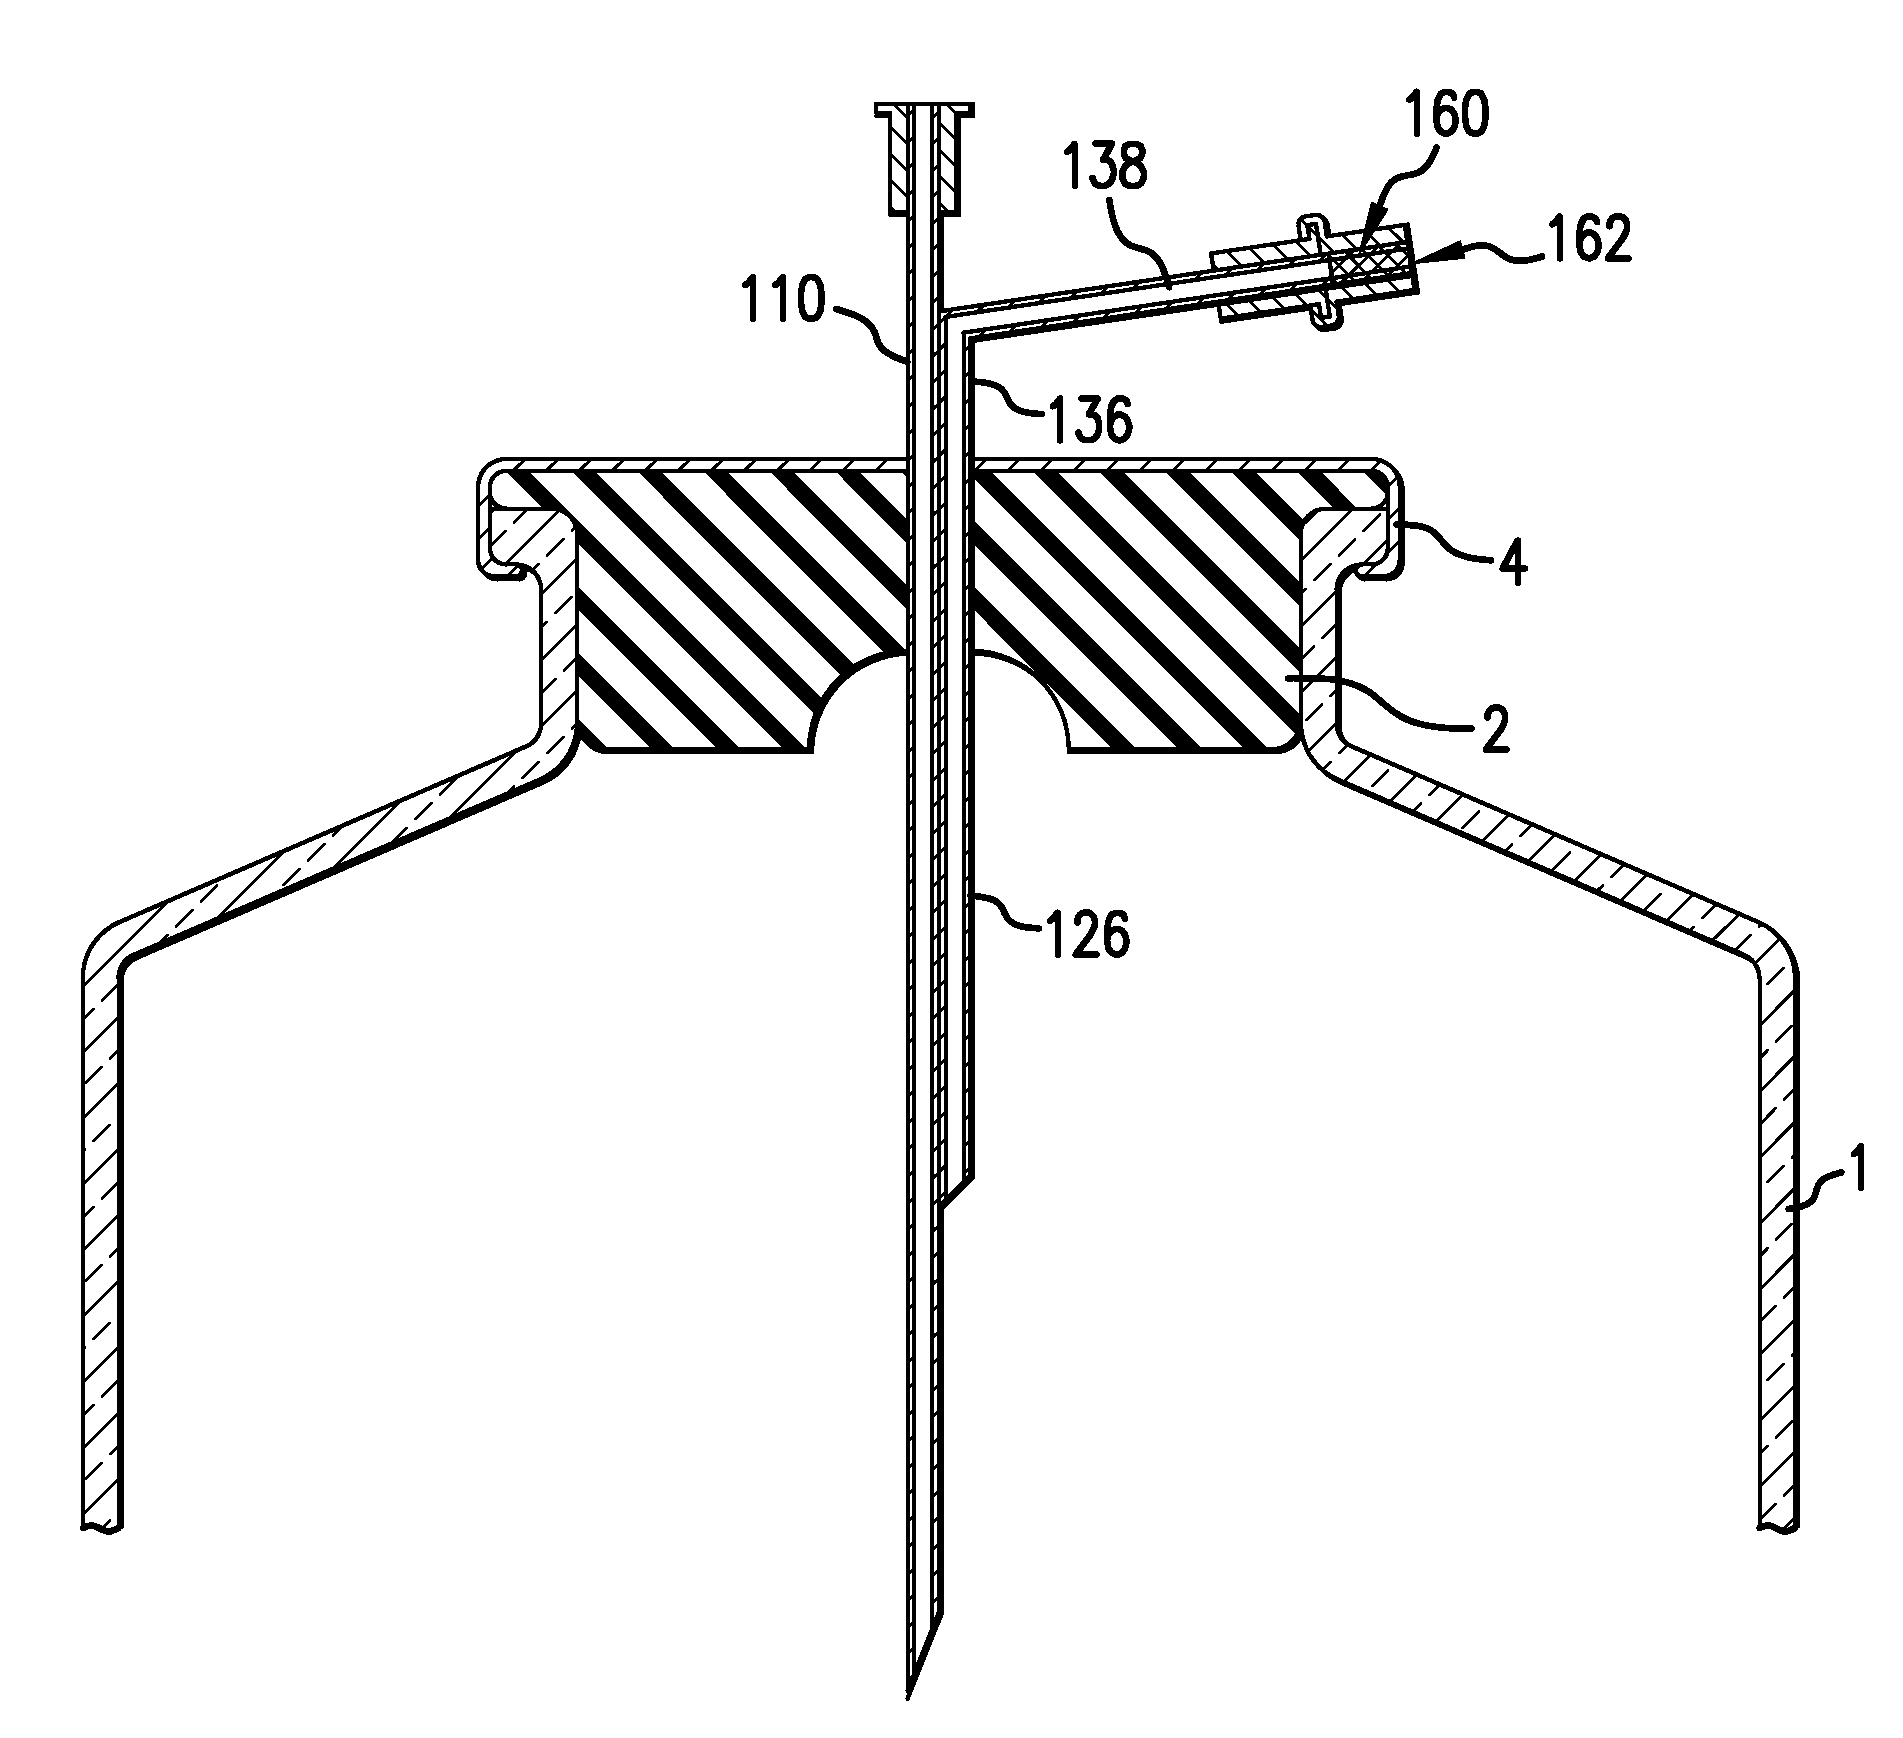 Dual-lumen needle